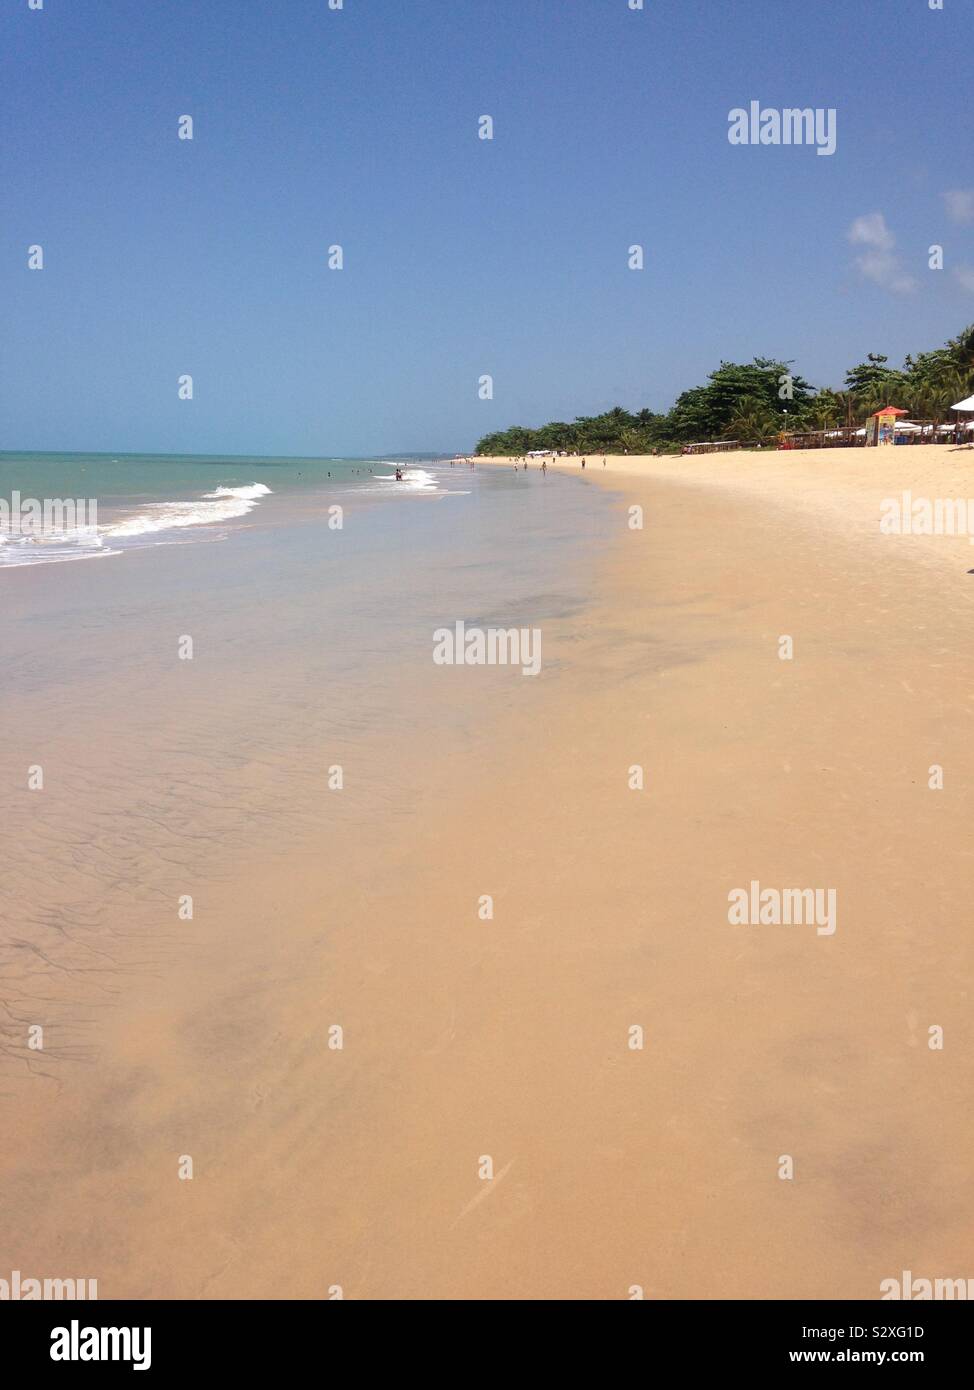 Plage de sable à Porto Seguro Bahia sur la côte du Brésil Banque D'Images